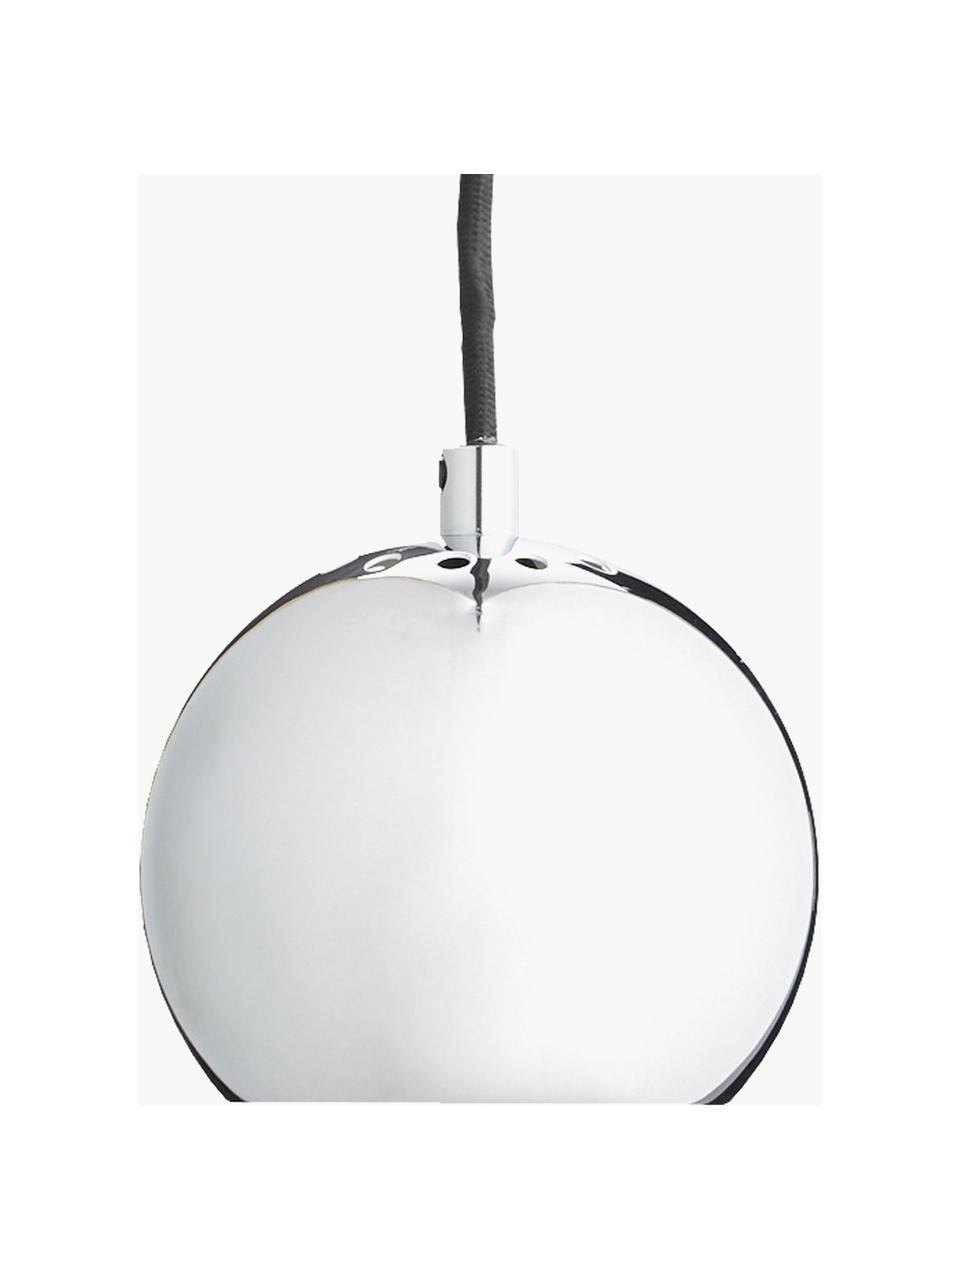 Kleine Kugel-Pendelleuchte Ball, Silberfarben, glänzend, Ø 12 x H 10 cm